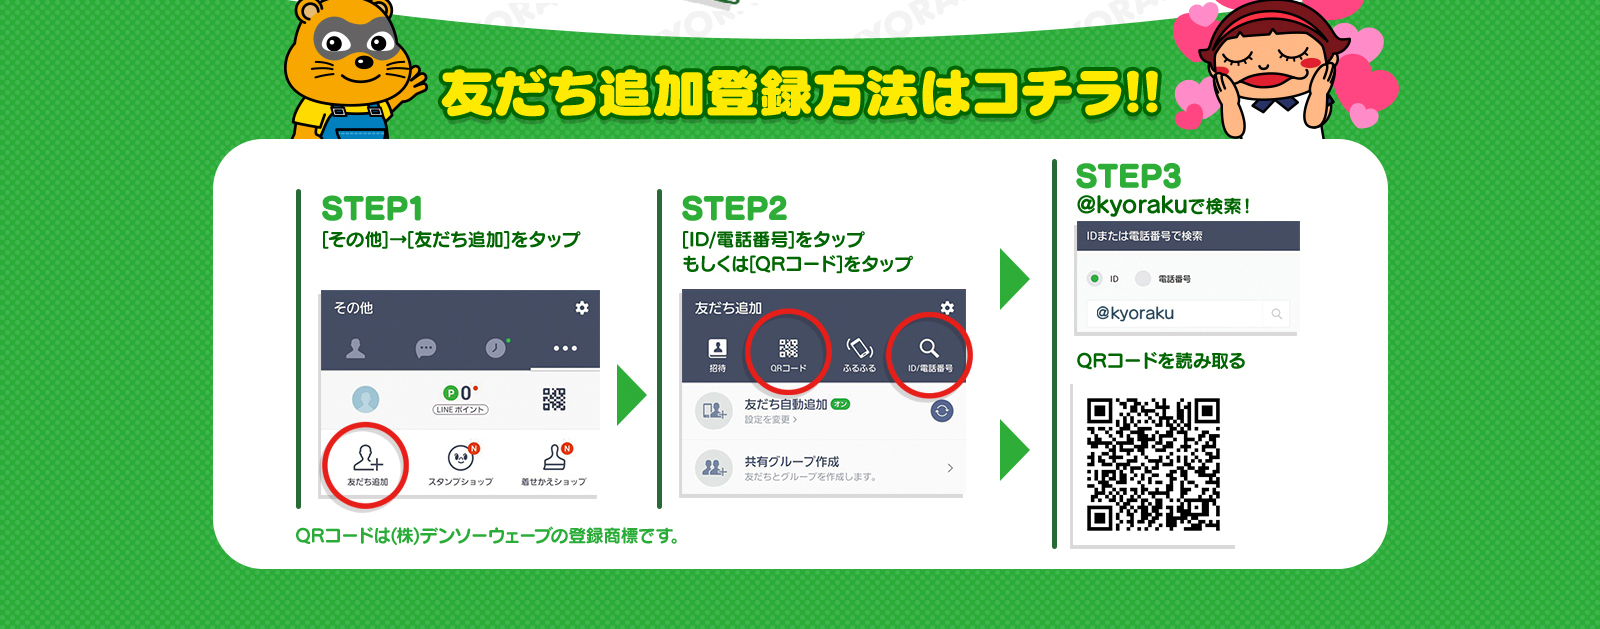 友だち追加登録方法はコチラ!! STEP1[その他]→[友だち追加]をタップ STEP2[ID/電話番号]をタップもしくは[QRコード]をタップ STEP3@kyorakuで検索！ QRコードを読み取る